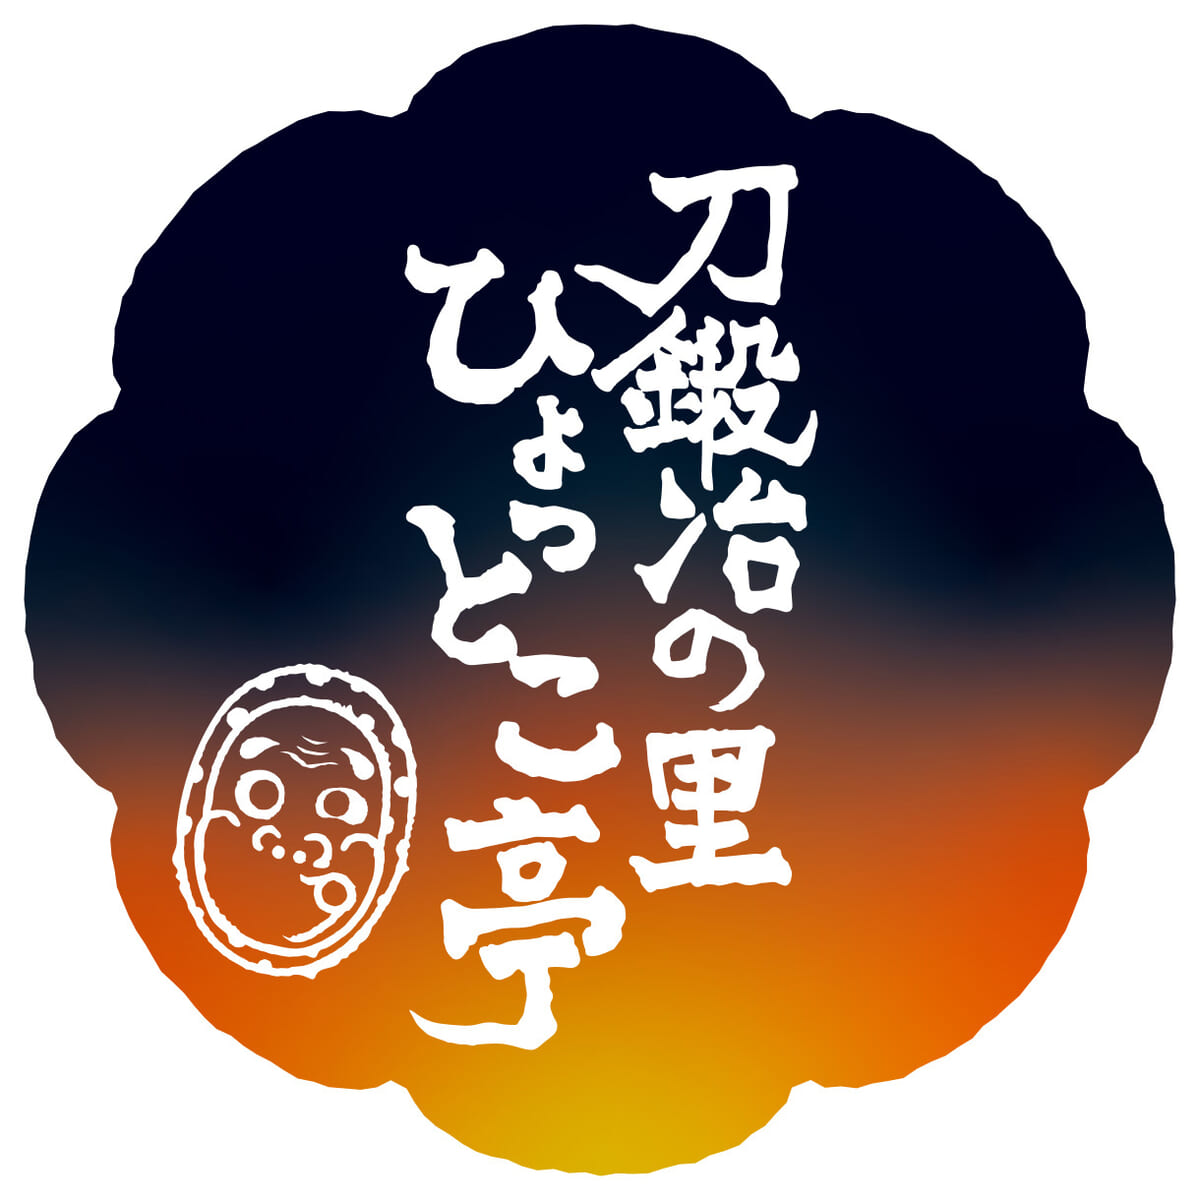 鬼滅の刃×ユニバーサル・スタジオ・ジャパン『刀鍛冶の里 ひょっとこ亭』2